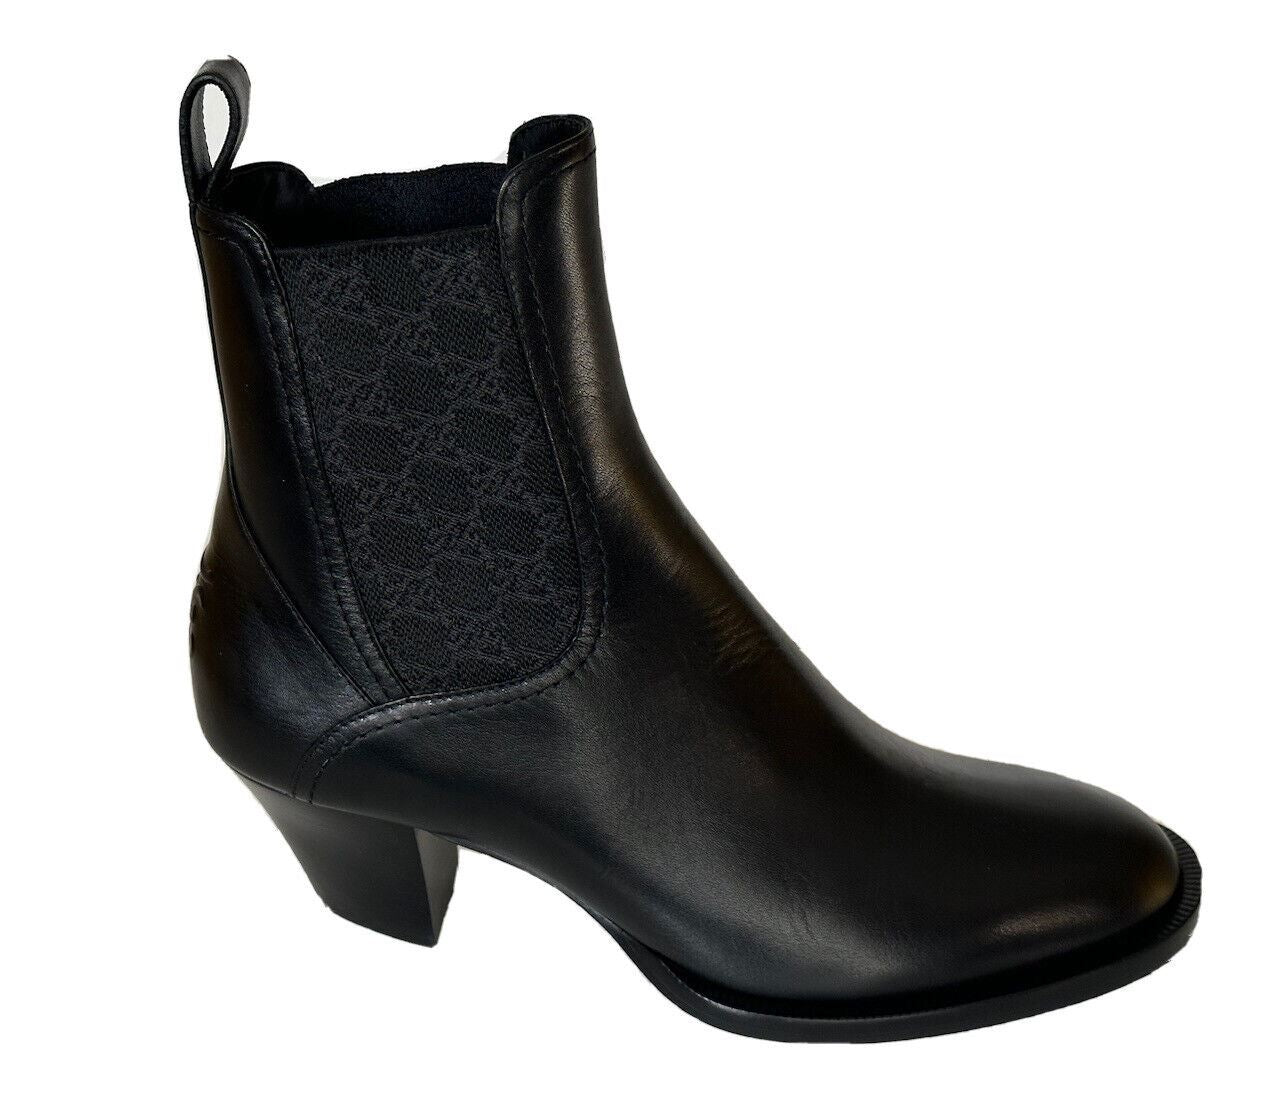 NIB Черные ботинки Fendi до щиколотки из мягкой телячьей кожи стоимостью 1100 долларов США 9 США (39 евро) IT 